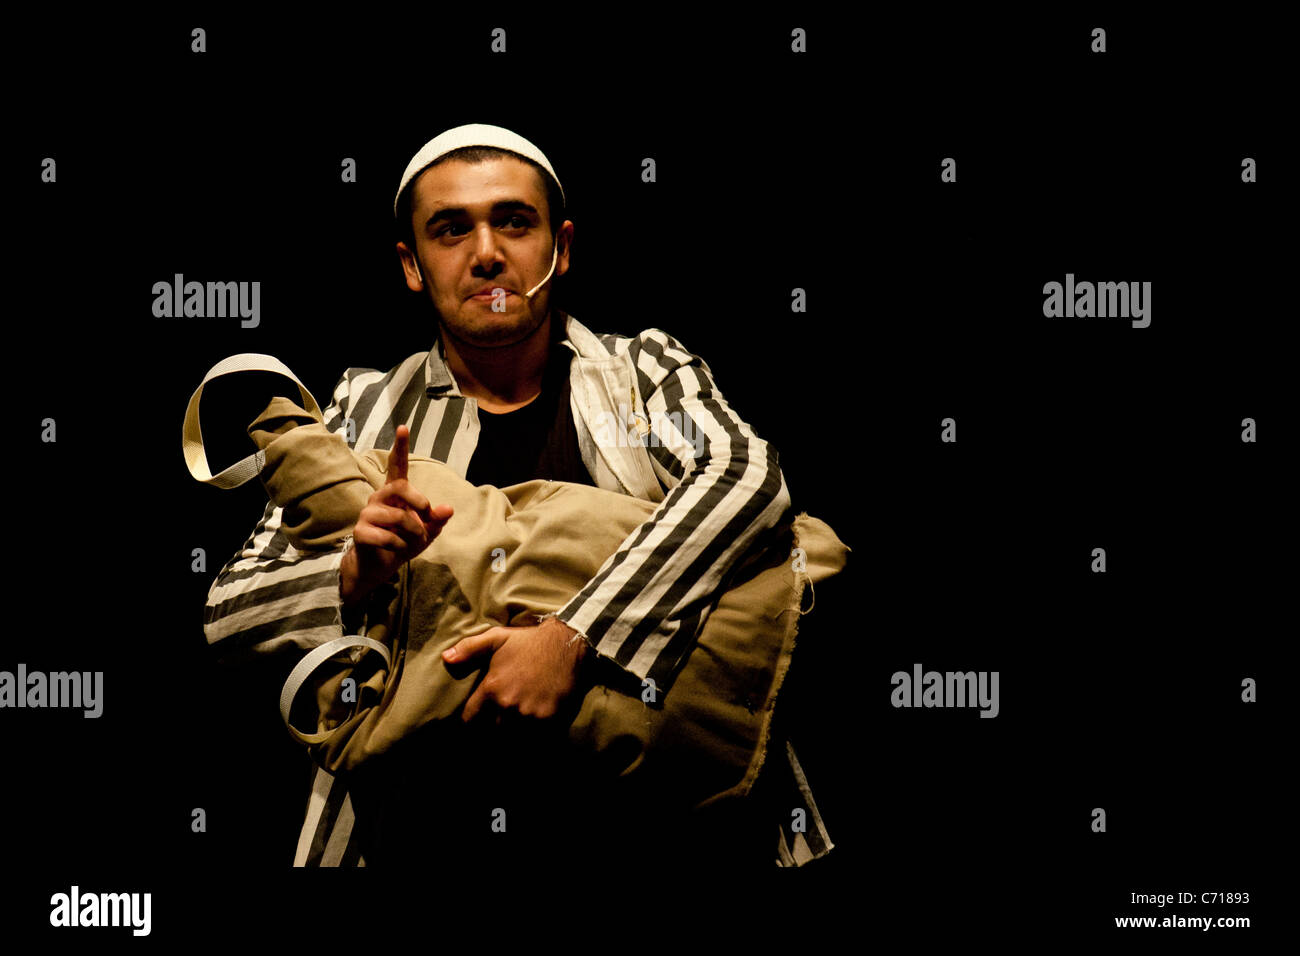 Martef Keller Theater junge Schauspieler durchführen "The Strength to Tell" zu Ehren von Holocaust-Überlebenden. Jerusalem, Israel. 09.07.2011. Stockfoto